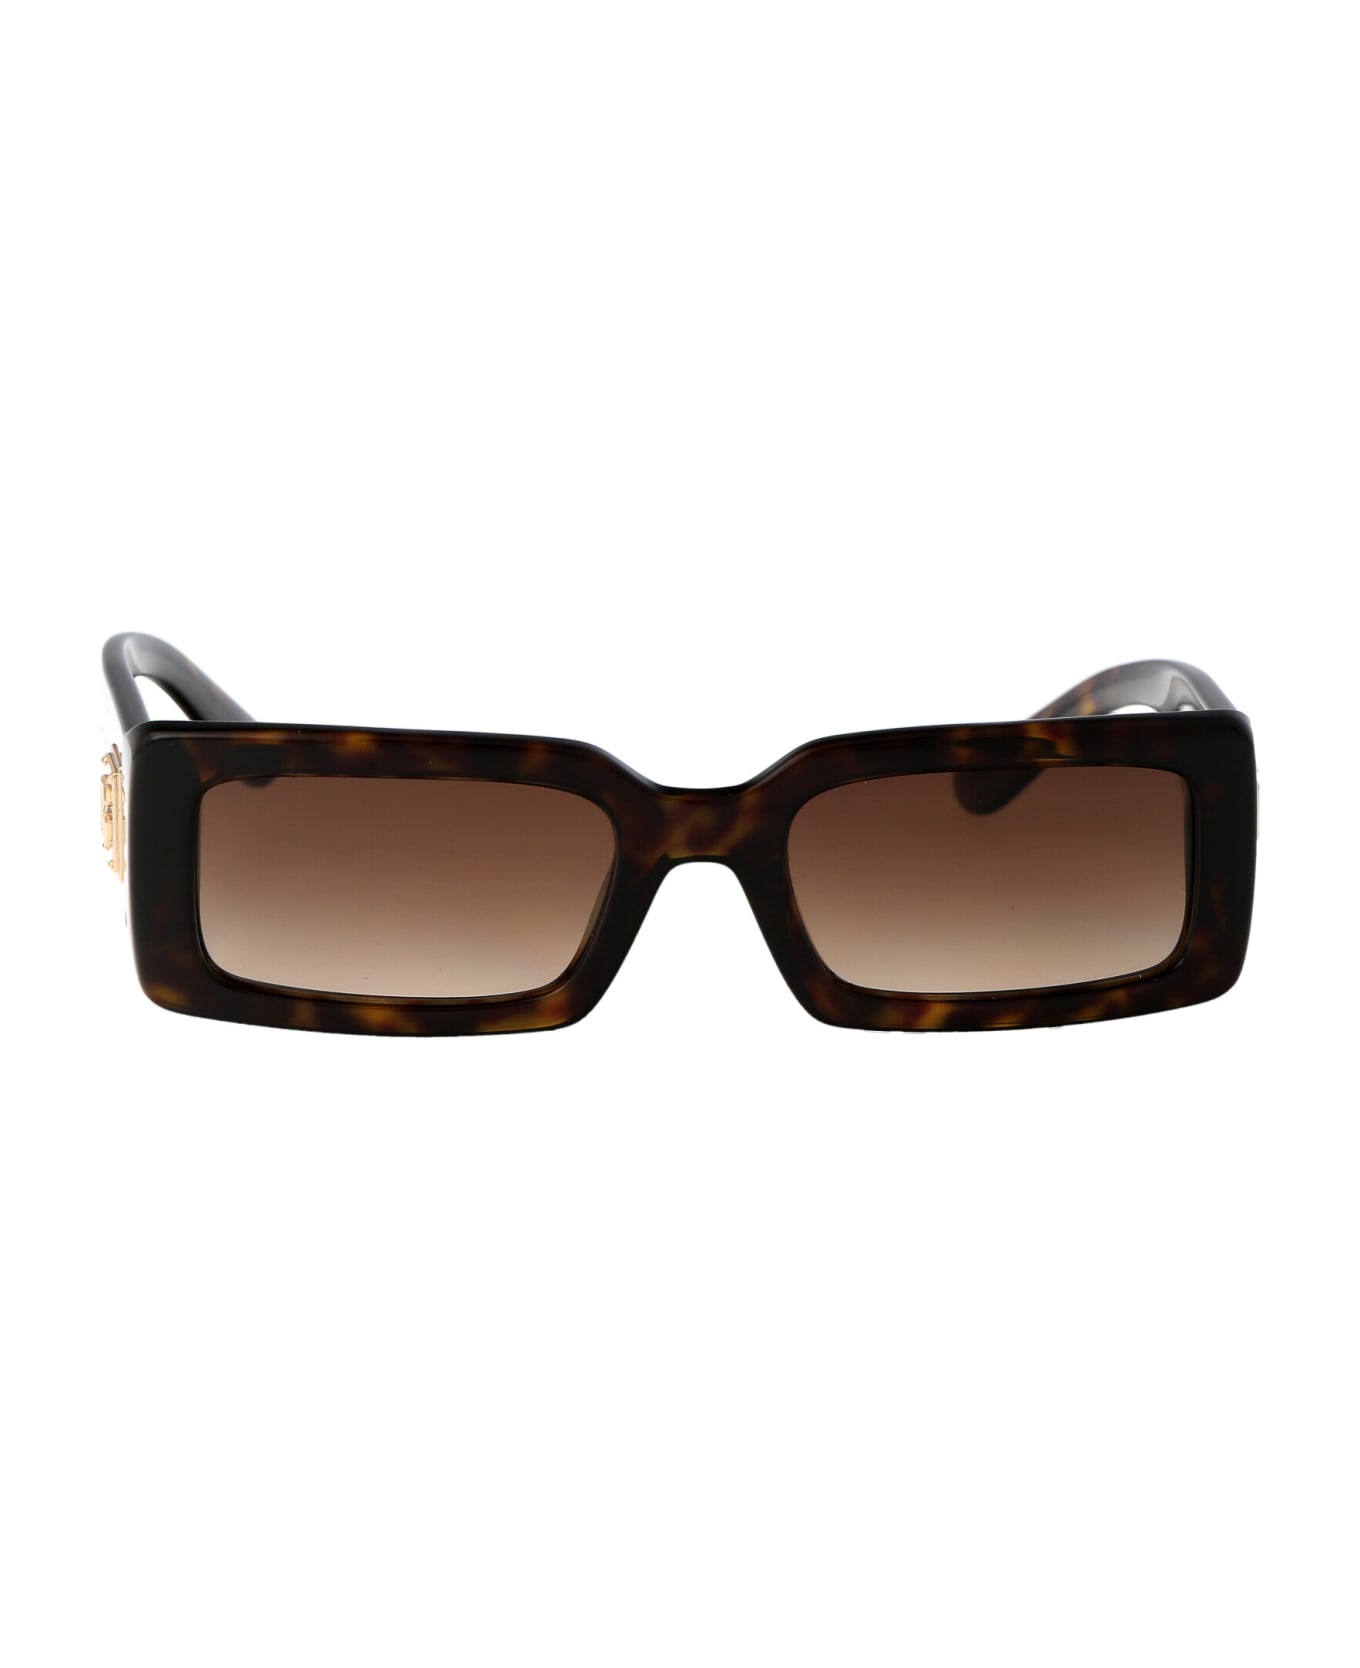 Dolce & Gabbana Eyewear 0dg4416 Sunglasses - 502/13 HAVANA